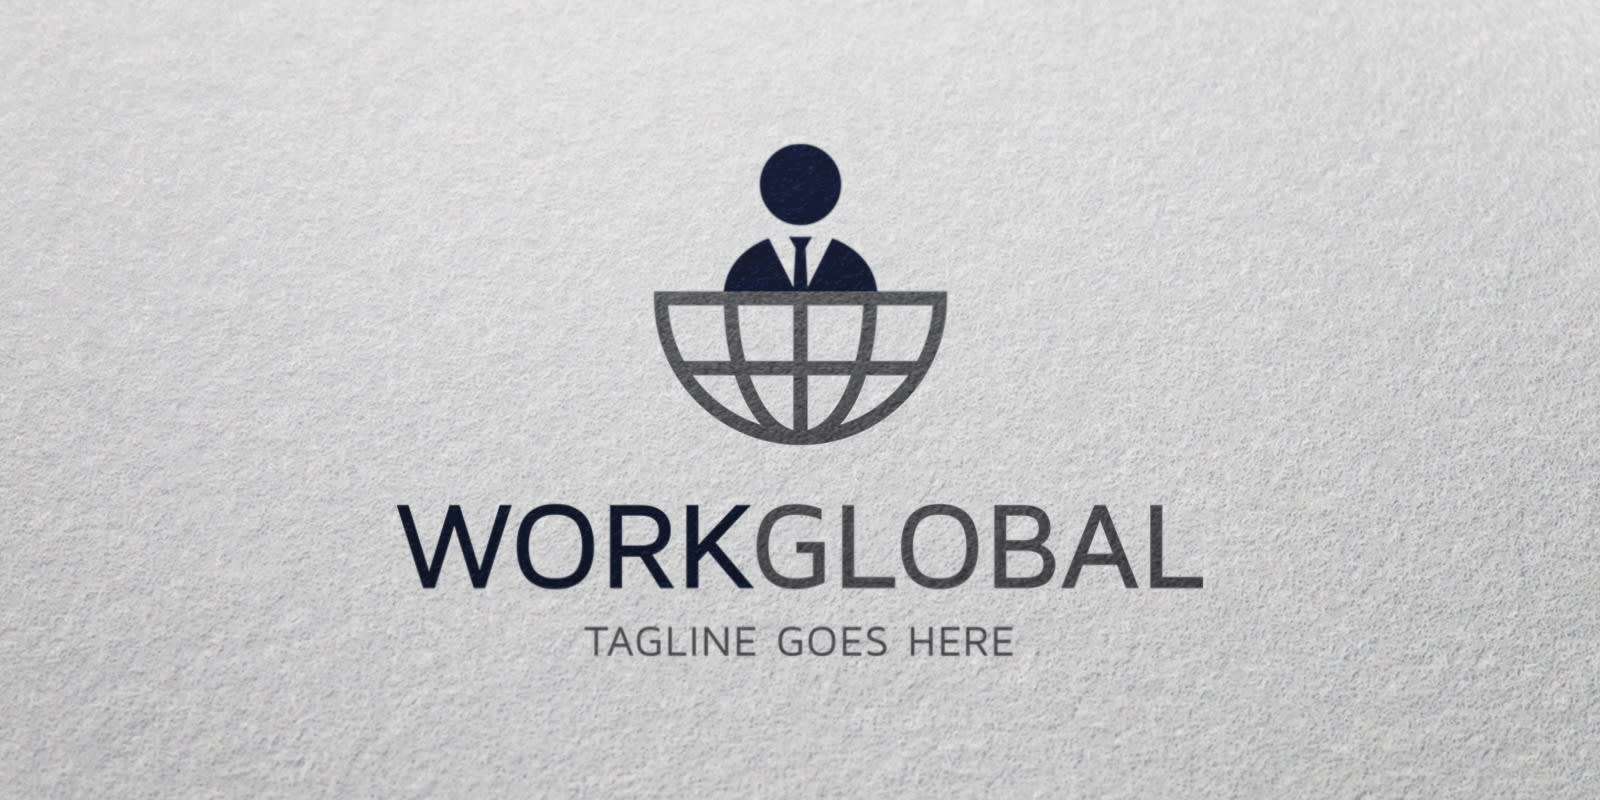 Globalwork